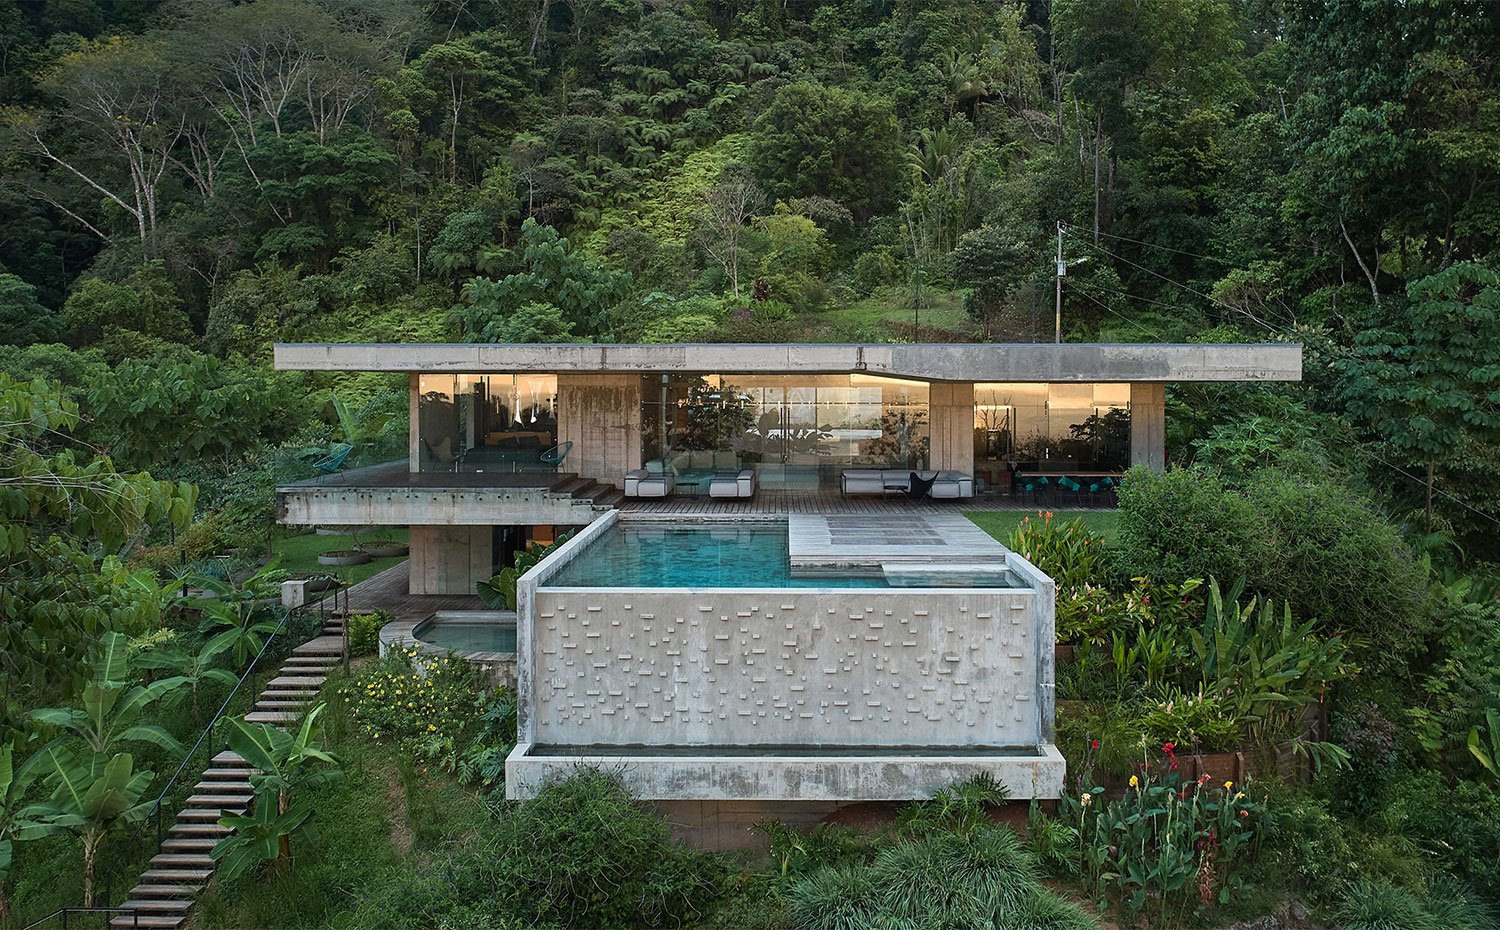 Vista general de la vivienda con gran piscina junto a terraza y escaleras de madera entre densa vegetación